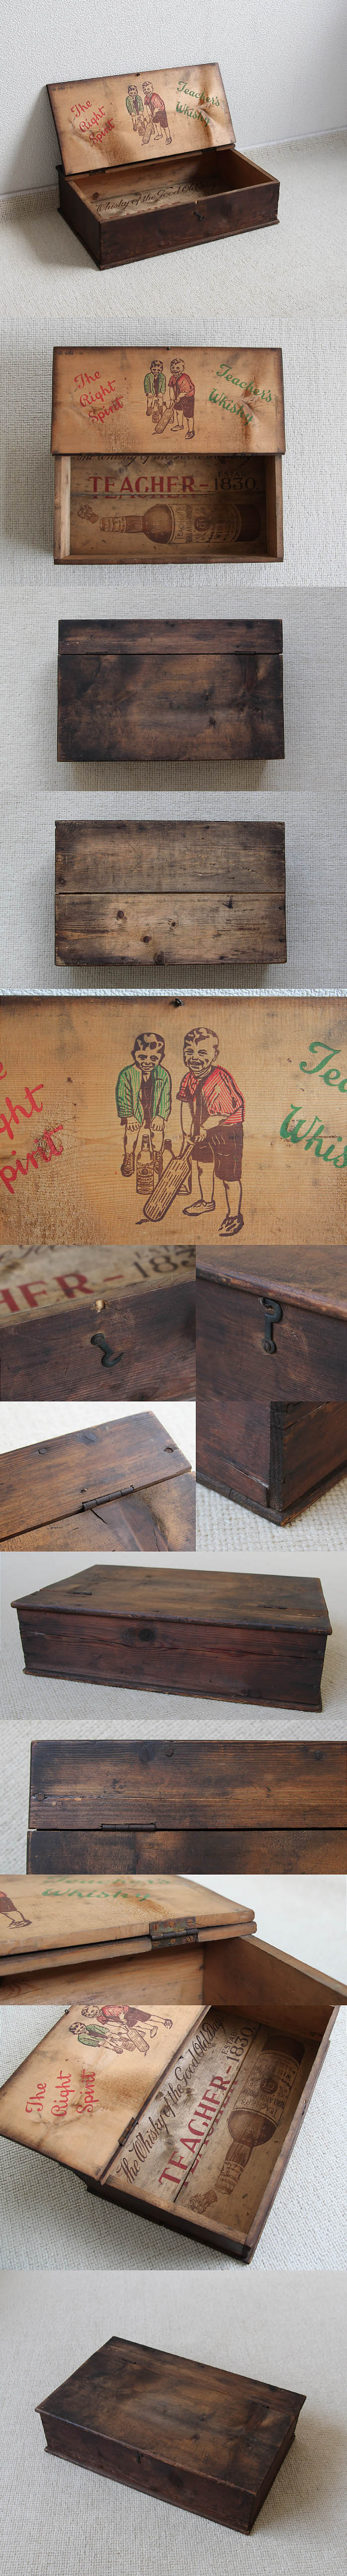 イギリス アンティーク ウッドボックス ティーチャーズ ウイスキー パイン材 木箱「Teacher's Whisky」V-997